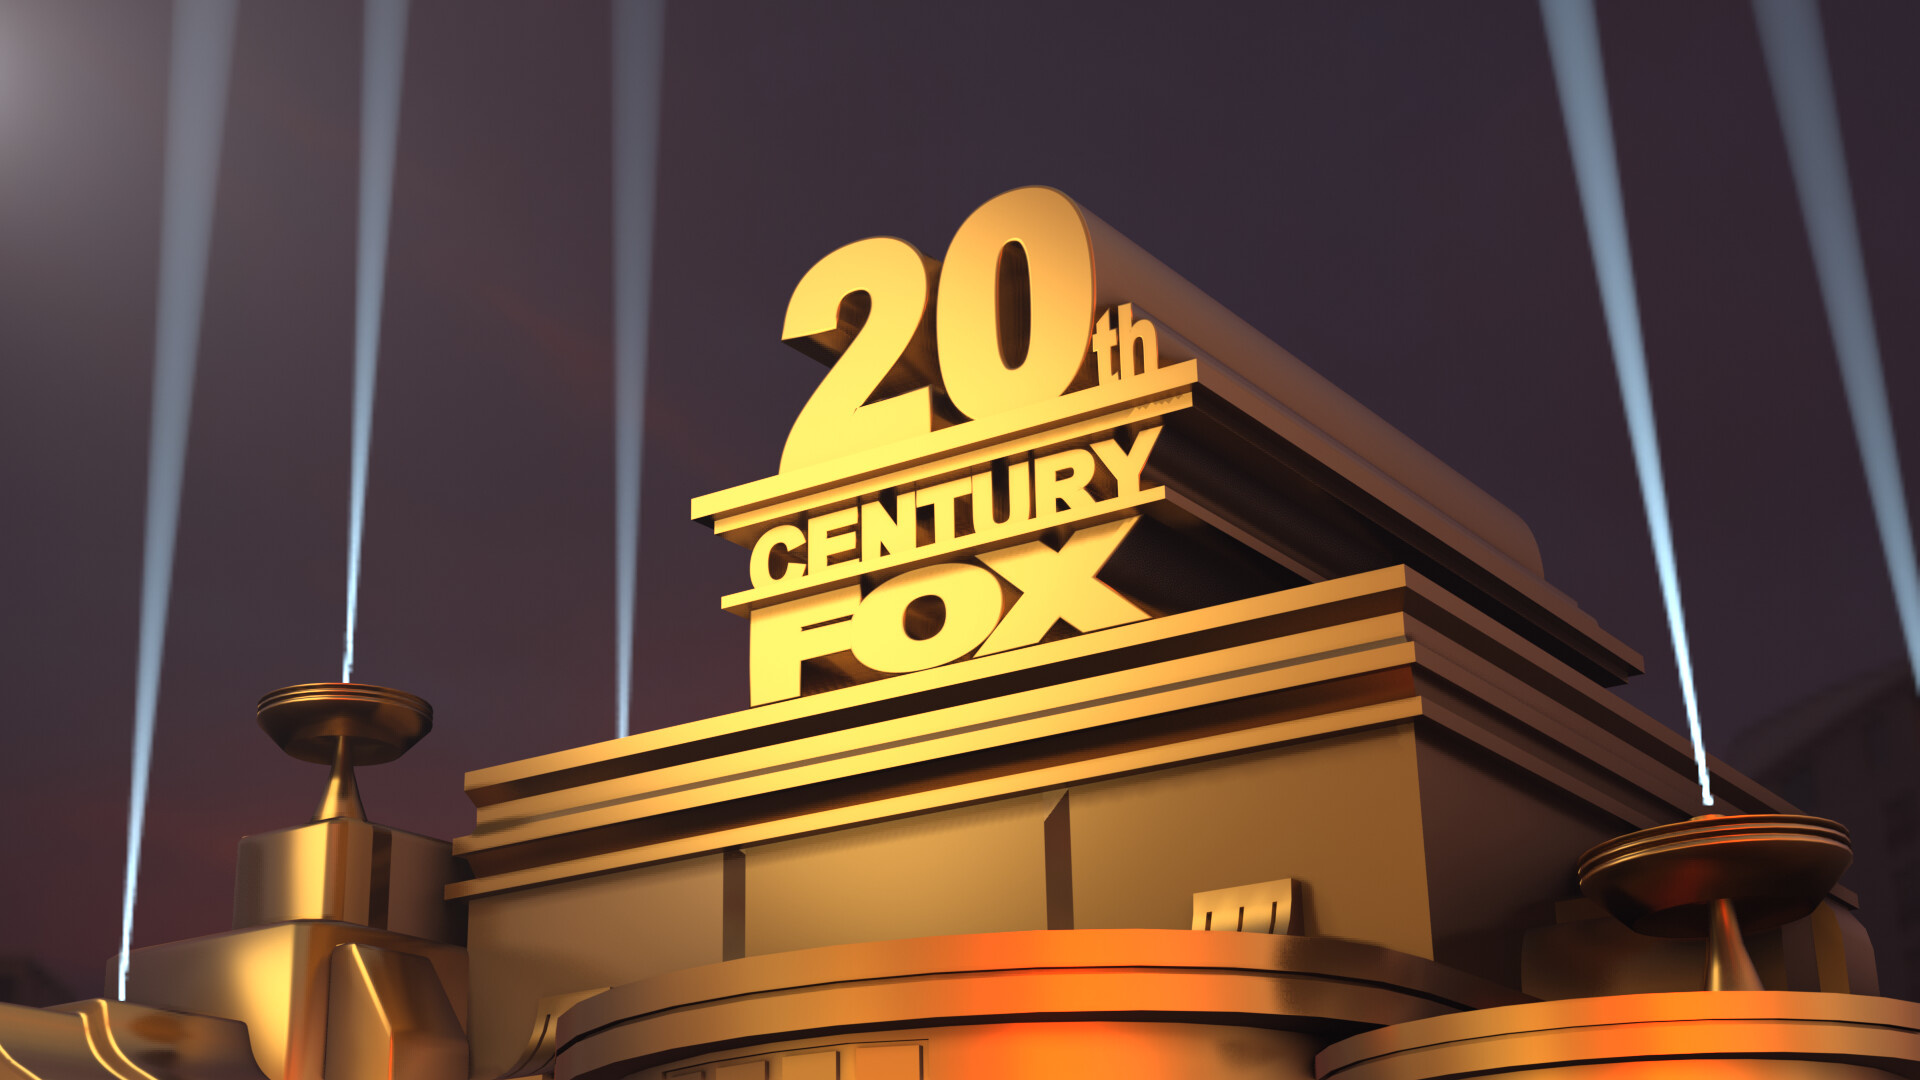 ArtStation, 20th Century Fox, Creative gallery, Fan artwork, 1920x1080 Full HD Desktop